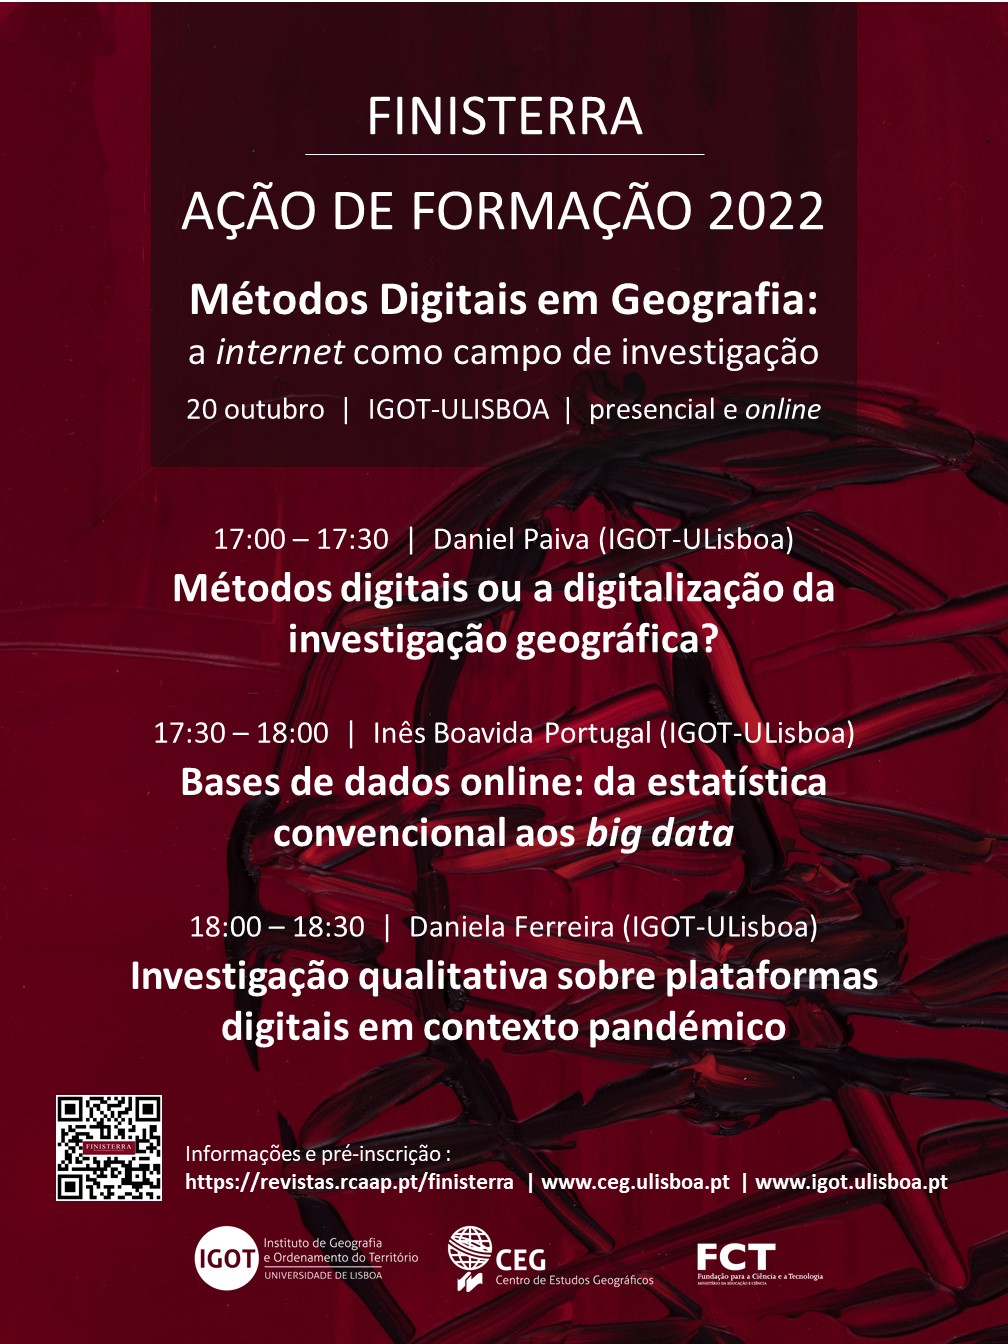 AÇÃO FORMAÇÃO 2022 - FINISTERRA